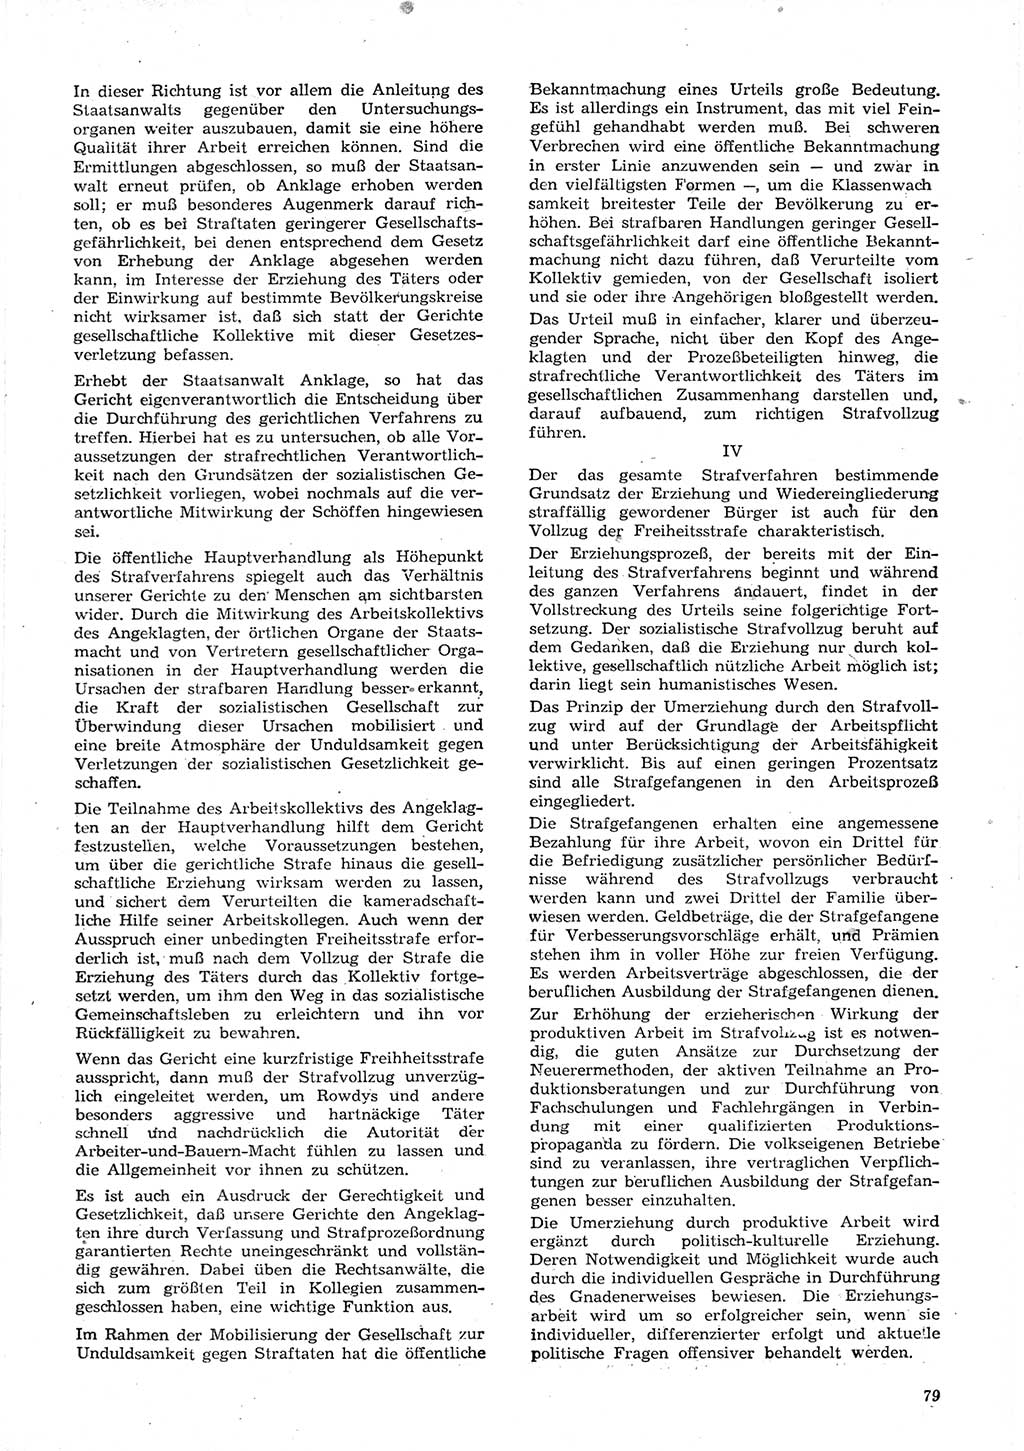 Neue Justiz (NJ), Zeitschrift für Recht und Rechtswissenschaft [Deutsche Demokratische Republik (DDR)], 15. Jahrgang 1961, Seite 79 (NJ DDR 1961, S. 79)